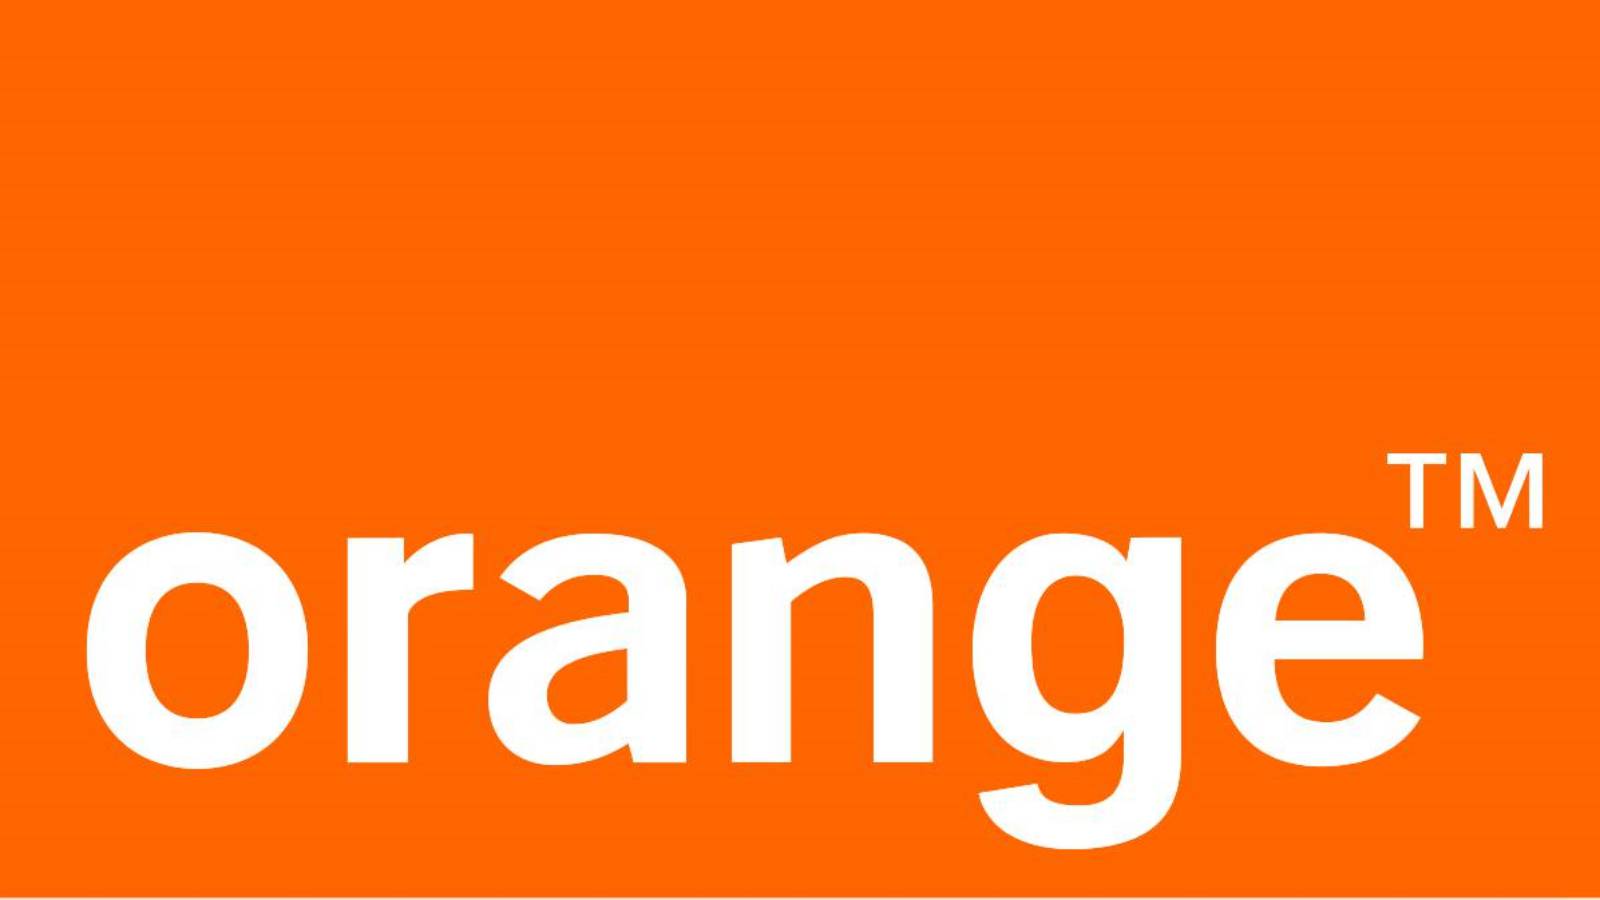 Orange offre GRATUITEMENT à ses clients les DERNIERS jours dont vous pouvez profiter